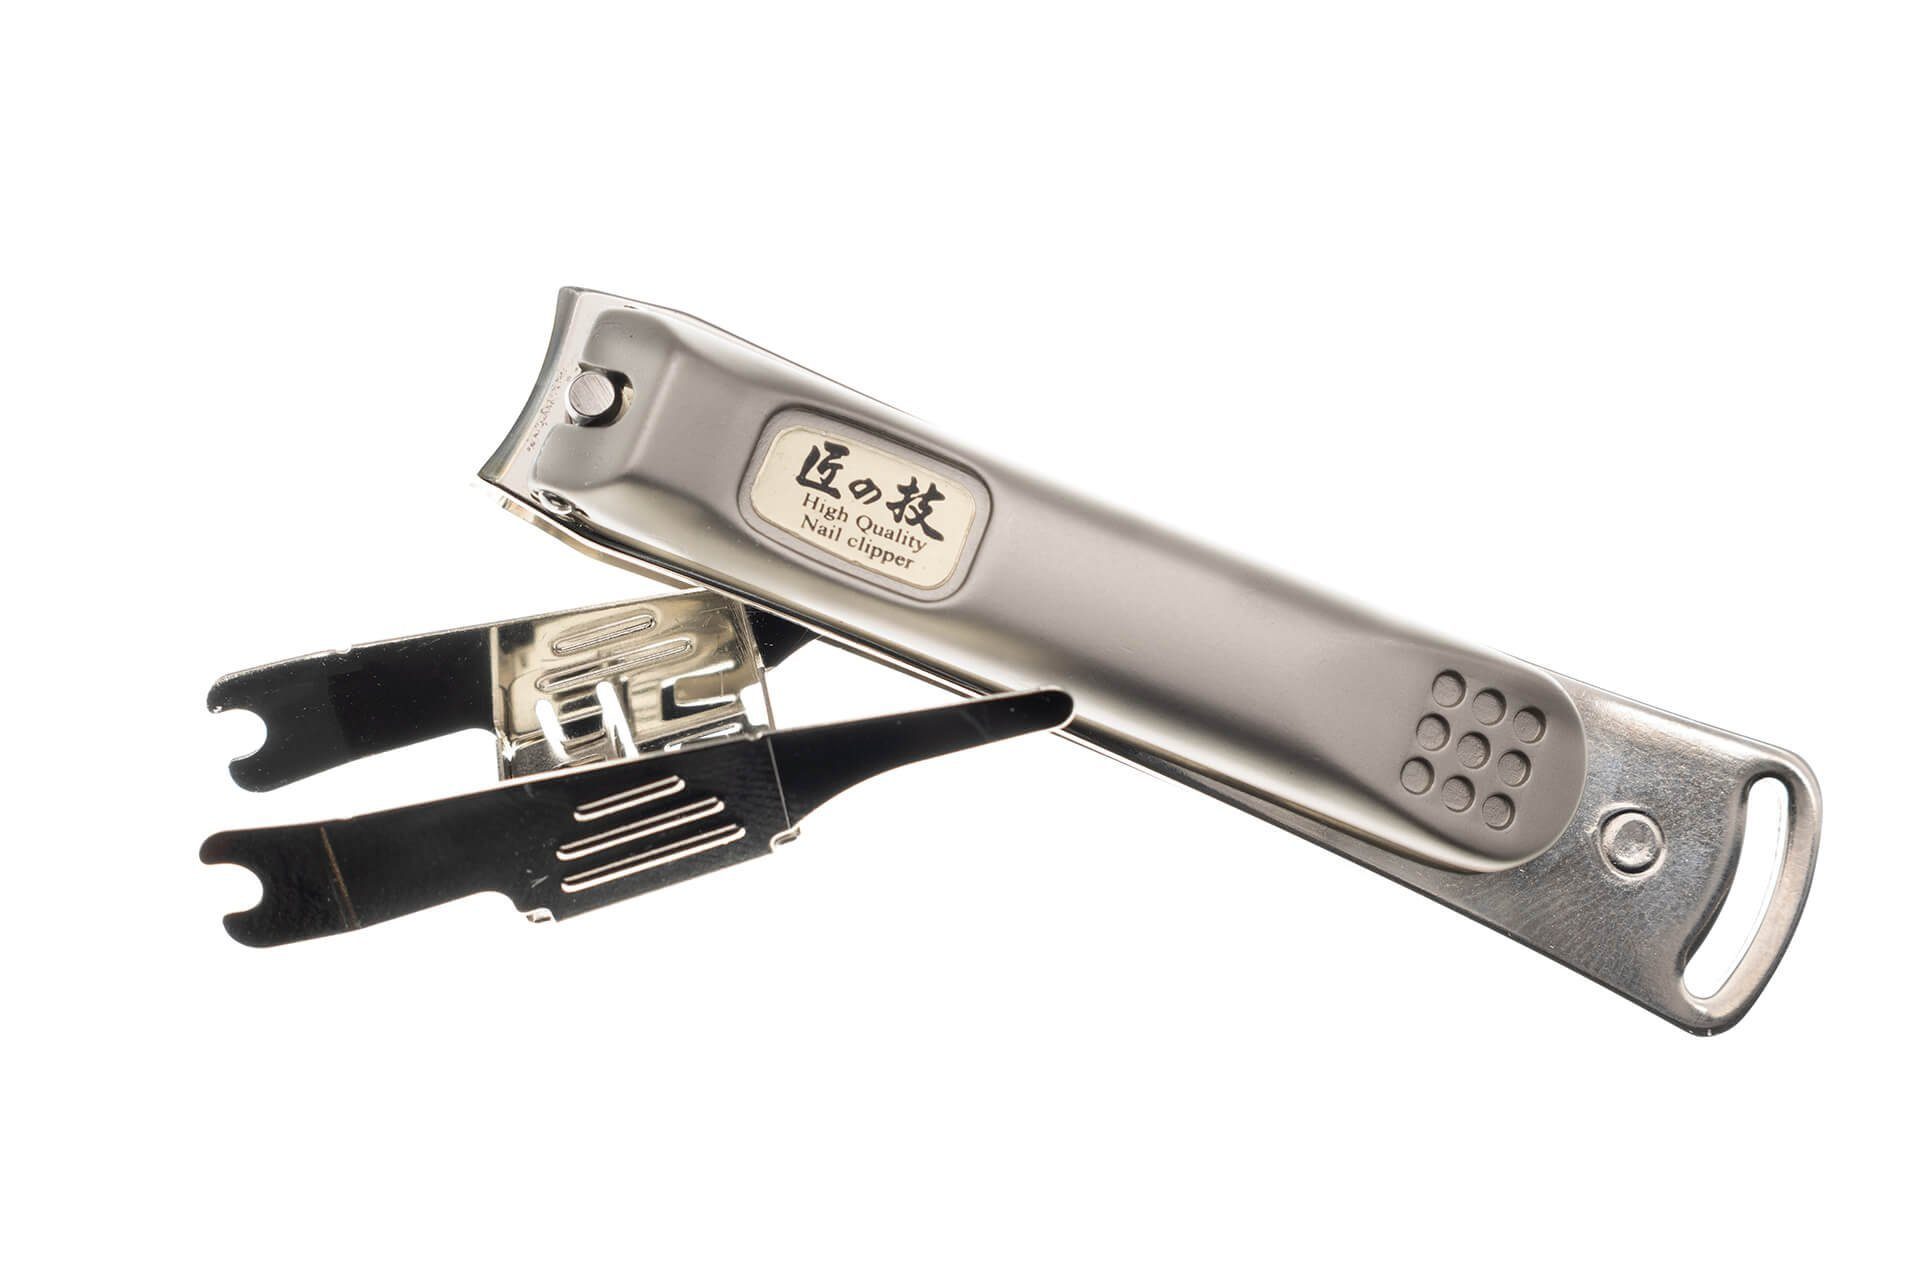 Seki EDGE Nagelknipser 2x8x1 G-1115 Auffangvorrichtung mit Kleiner Nagelknipser cm, Qualitätsprodukt Japan aus handgeschärftes